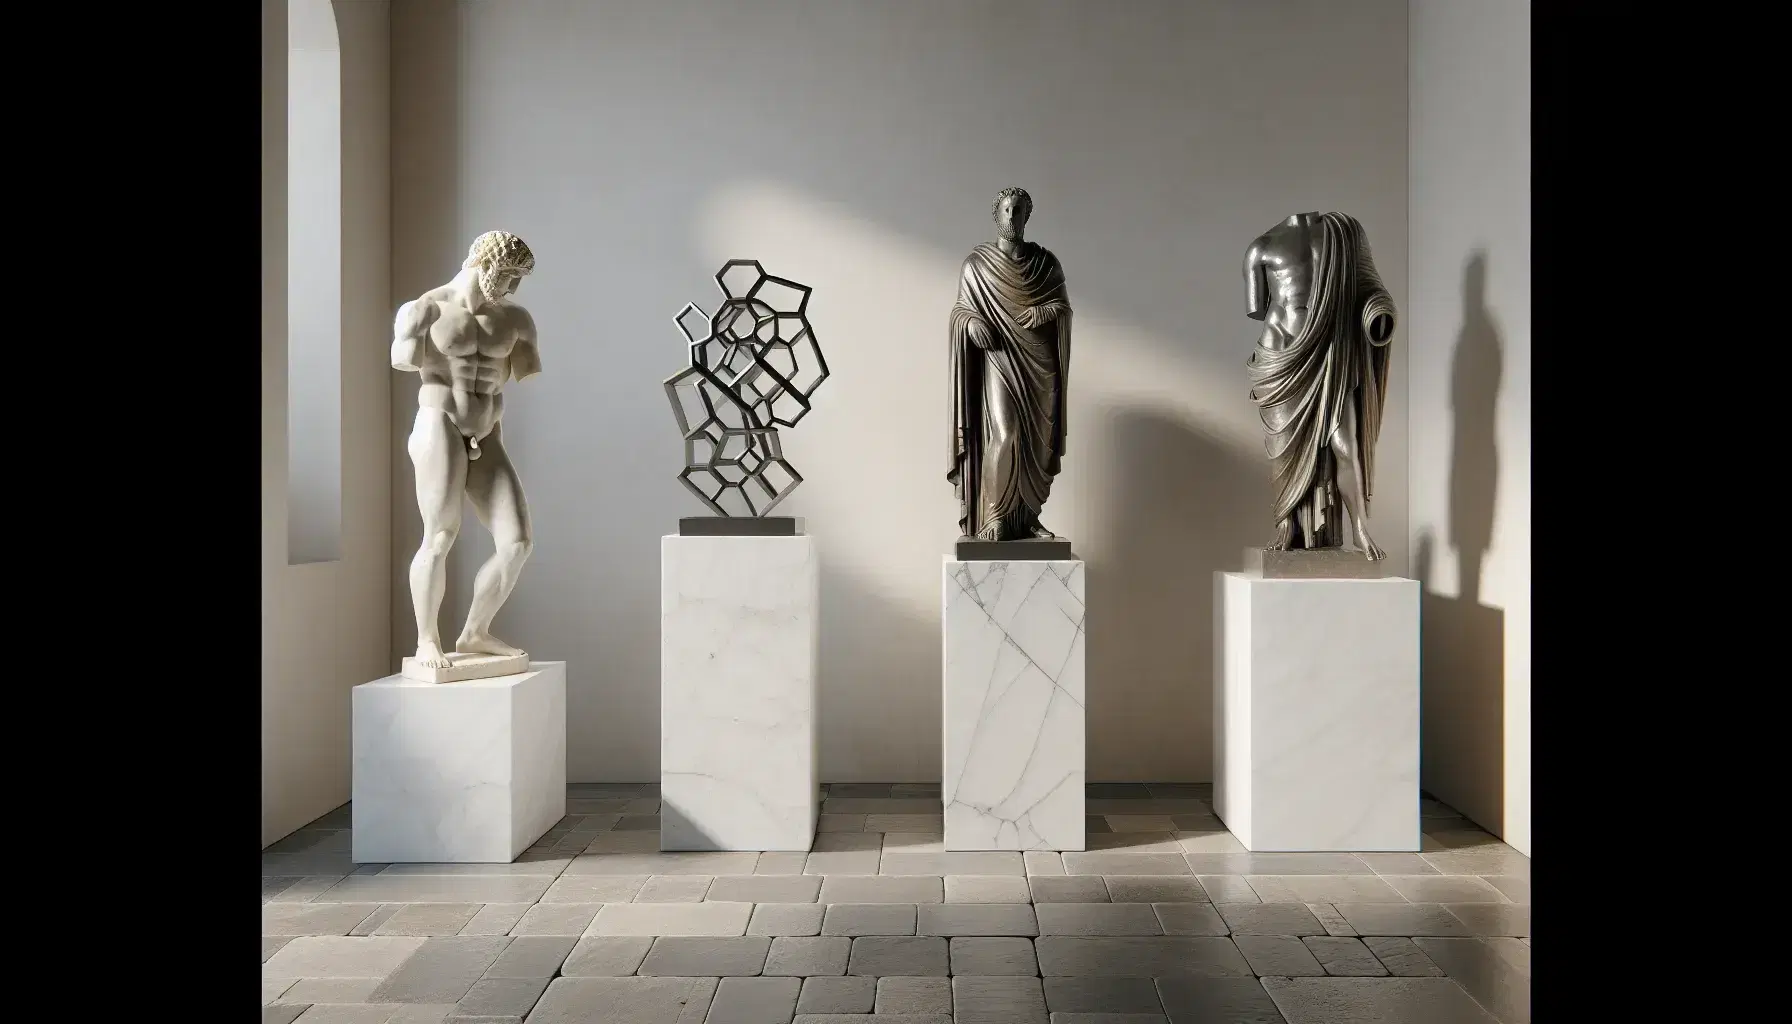 Colección de tres esculturas históricas en pedestales de mármol, incluyendo un kouros griego, un santo medieval de madera y una figura abstracta contemporánea de metal.